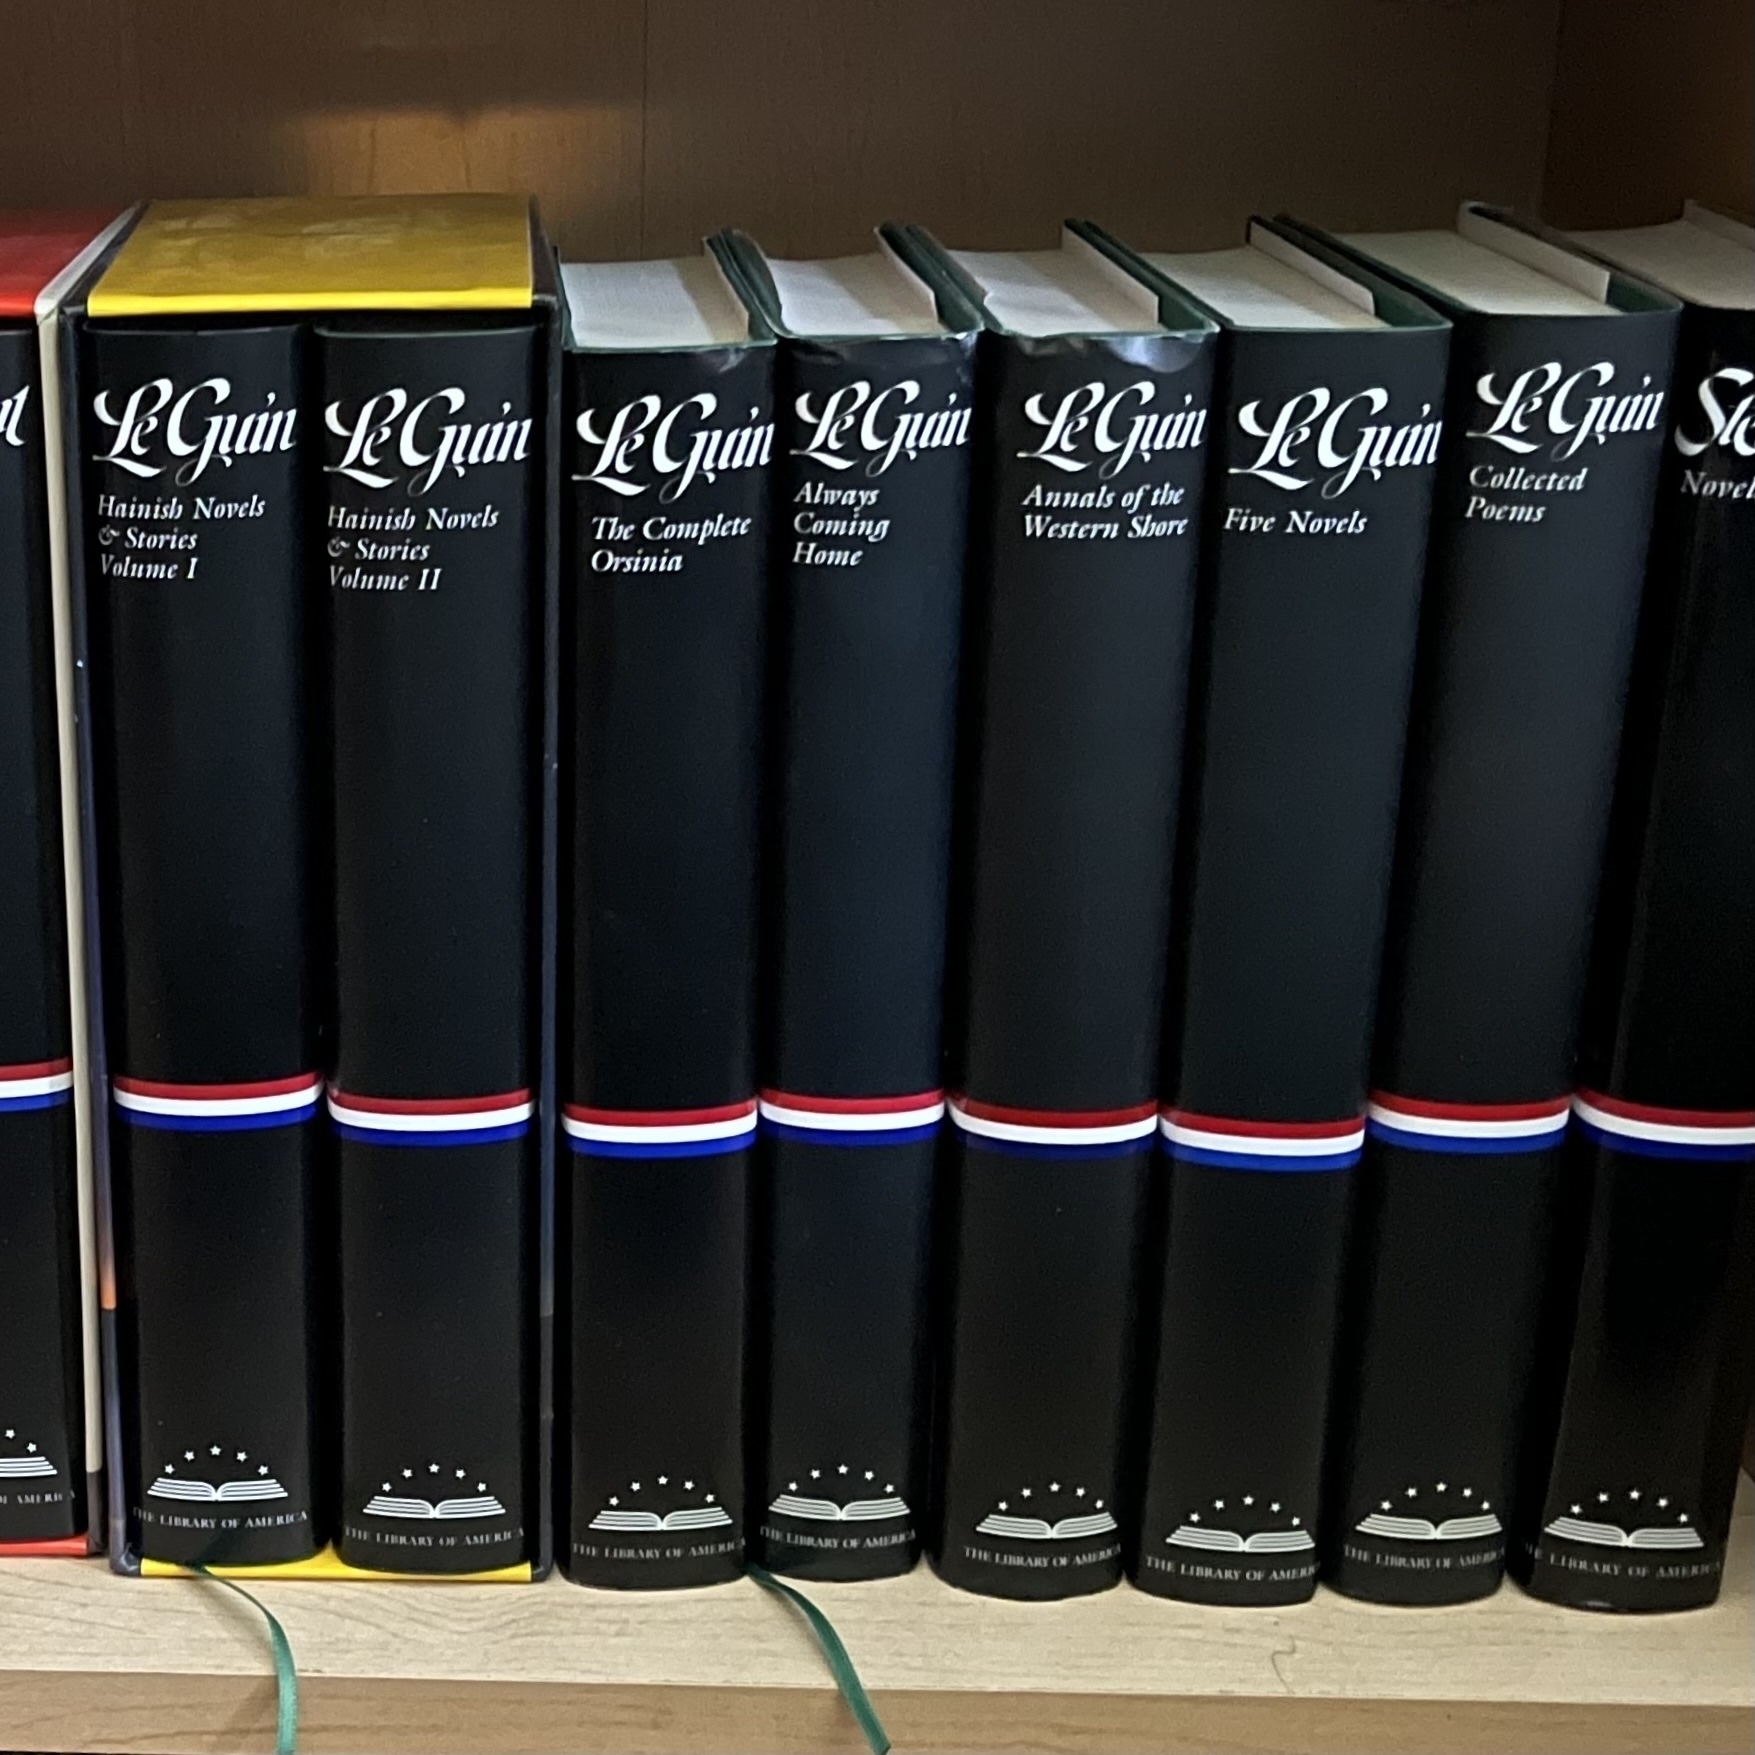 All of the Ursula K. Le Guin LoA books together on a shelf.